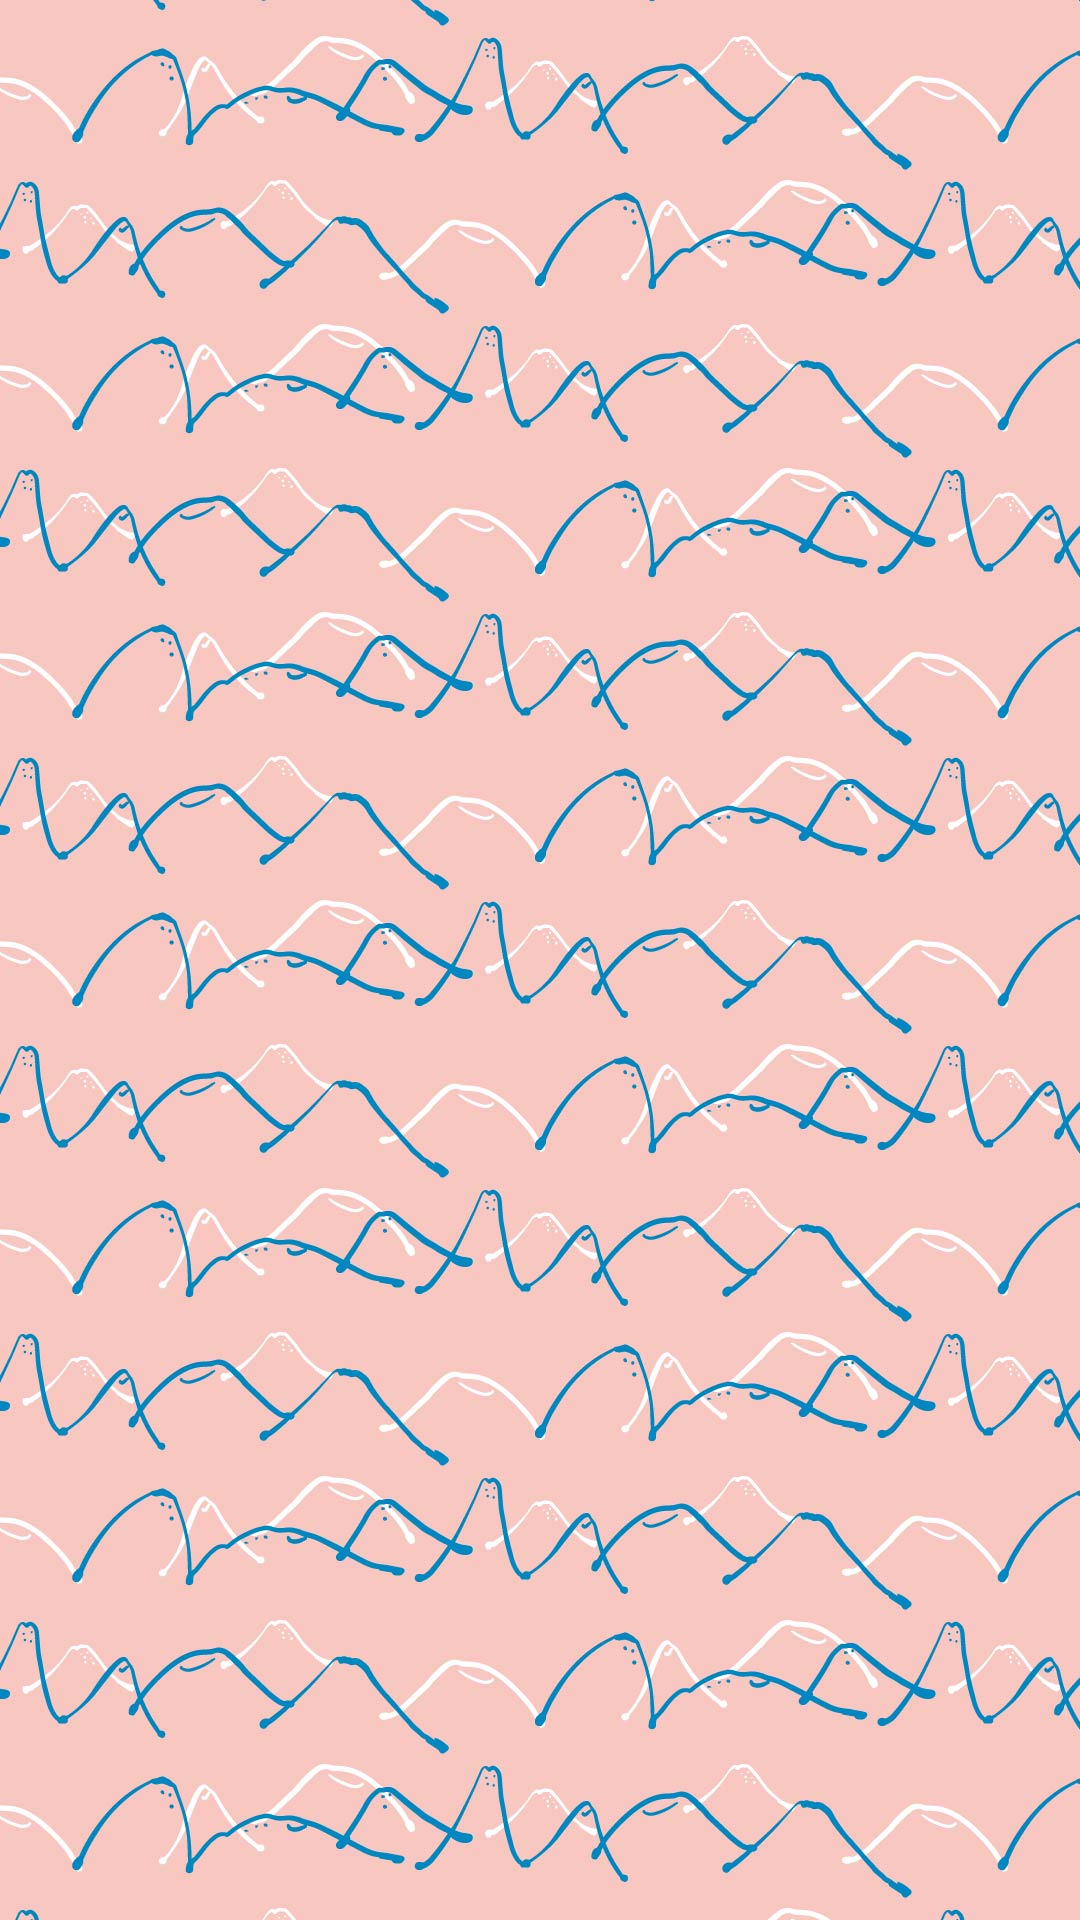 薄いピンク色の背景に山並みのパターン